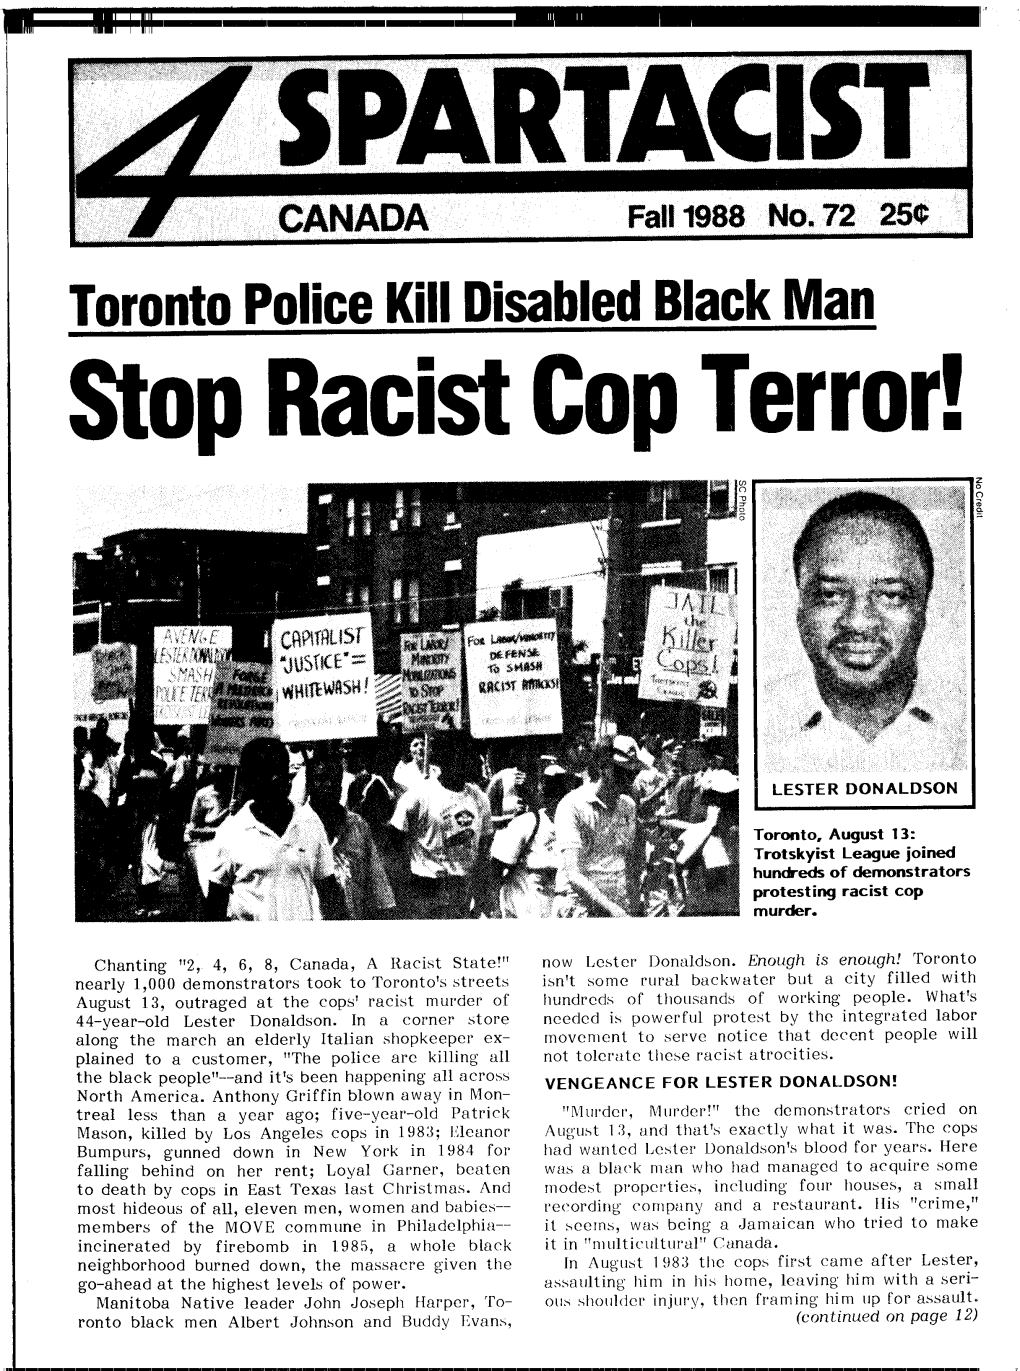 Stop Racist Cop Terror!